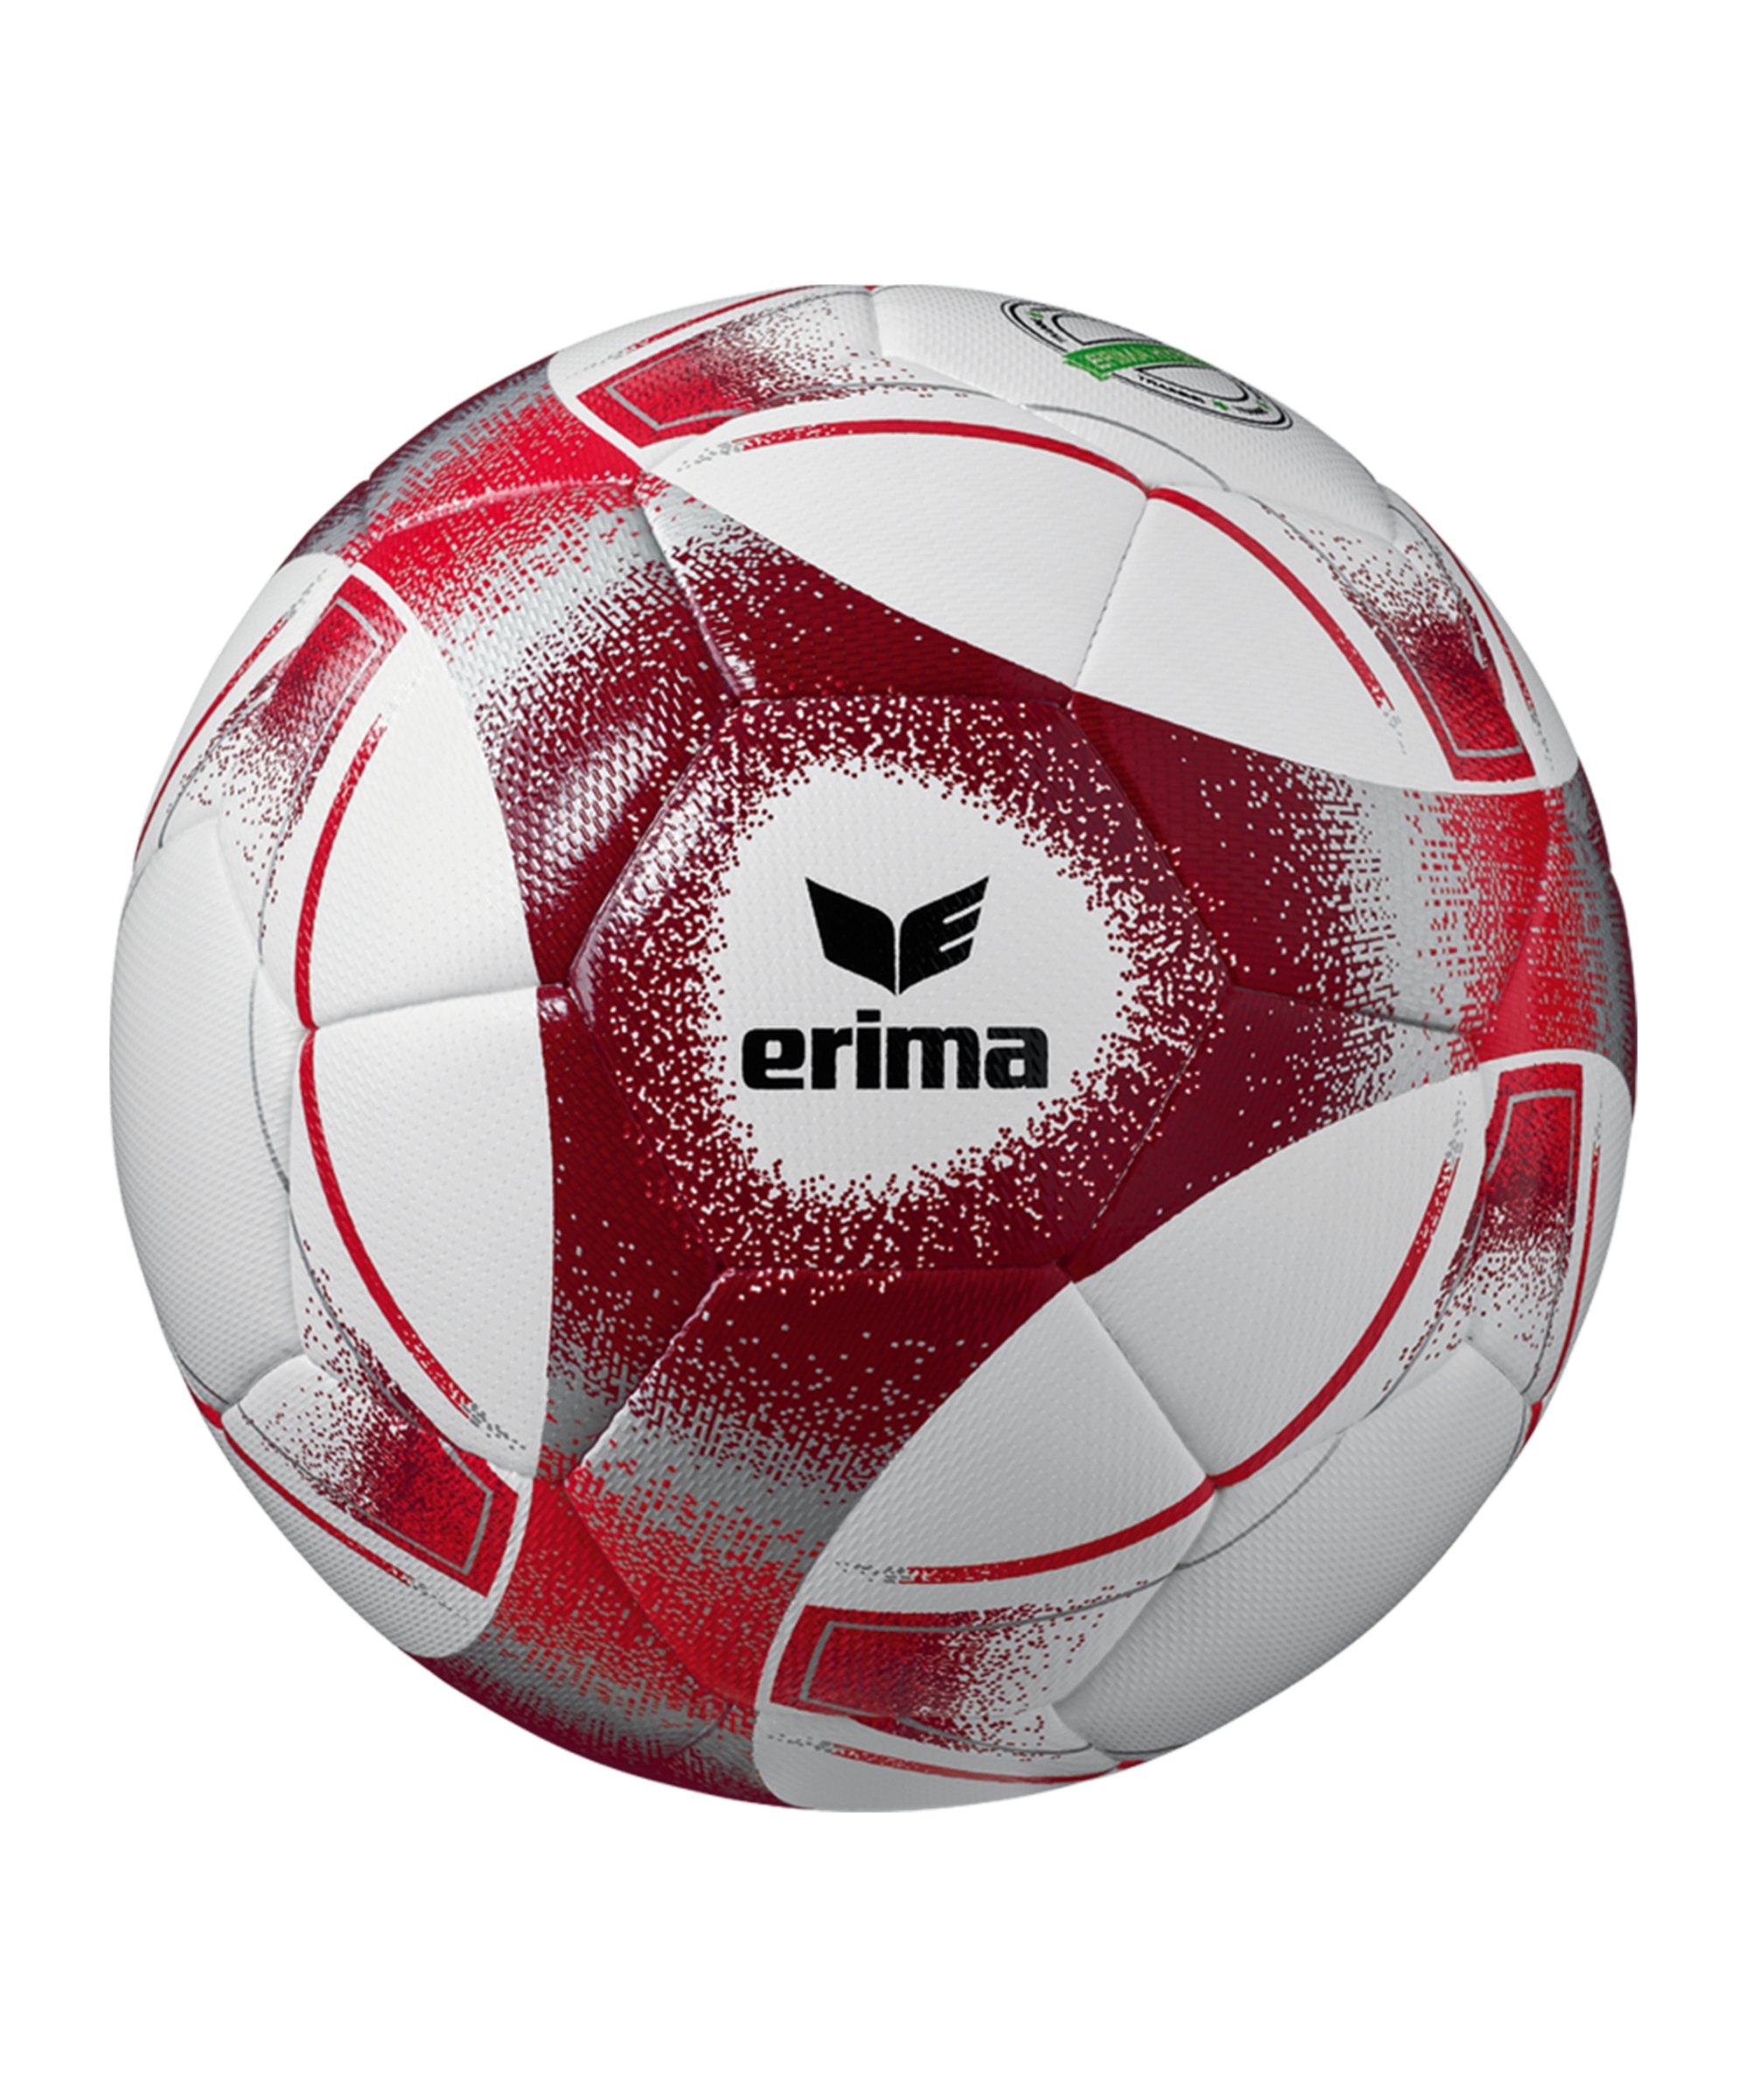 Erima Hybrid 2.0 Trainingsball Rot - rot